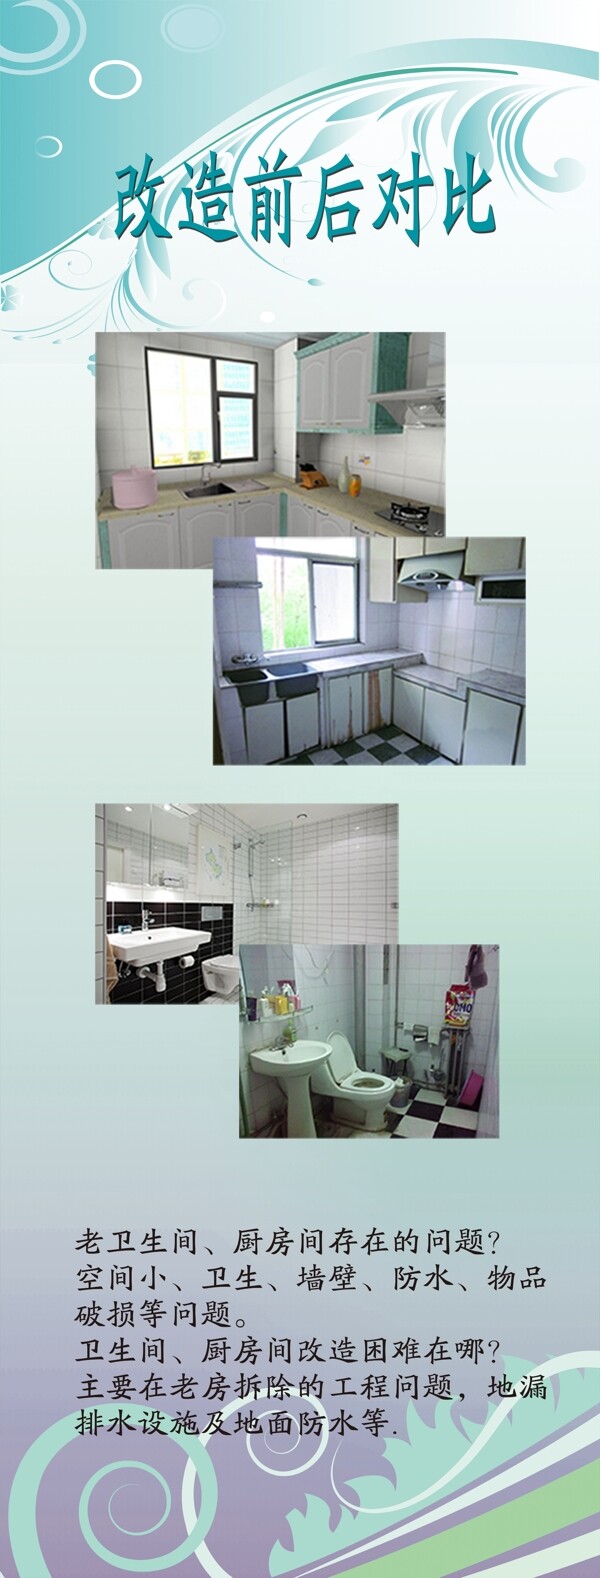 卫生间厨房改造前后对比图展架